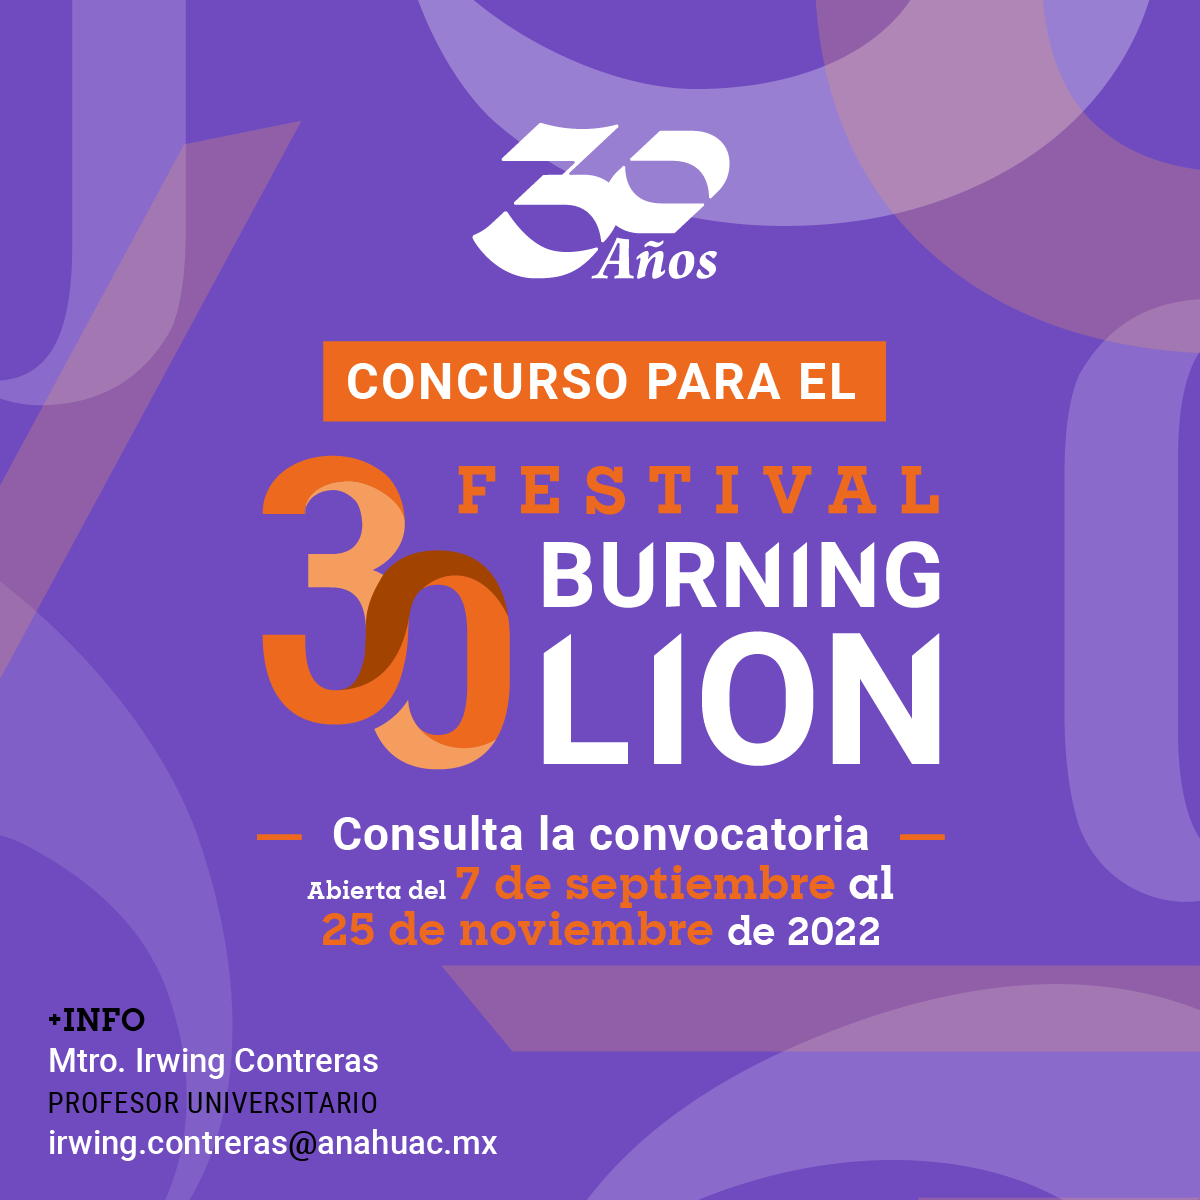 Concurso para el Festival Burning Lion 30